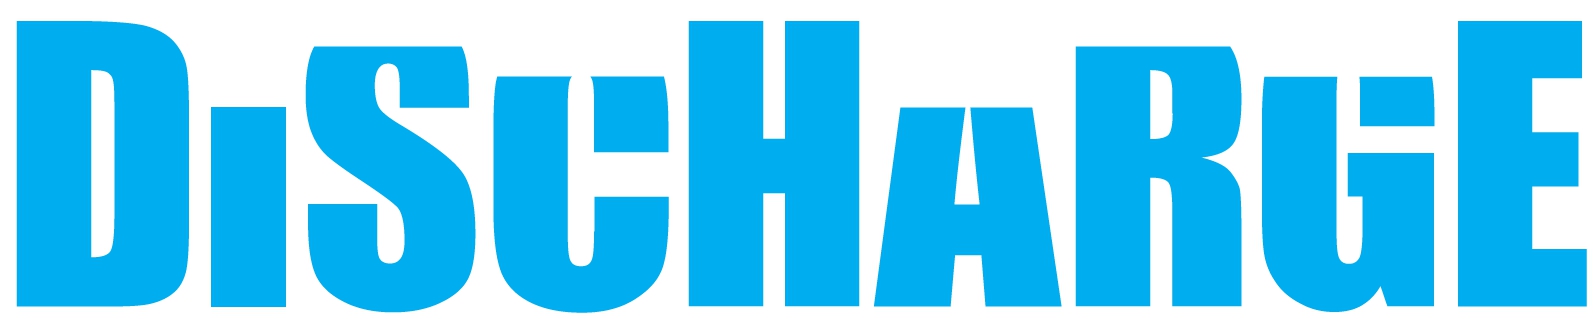 Discharge logo